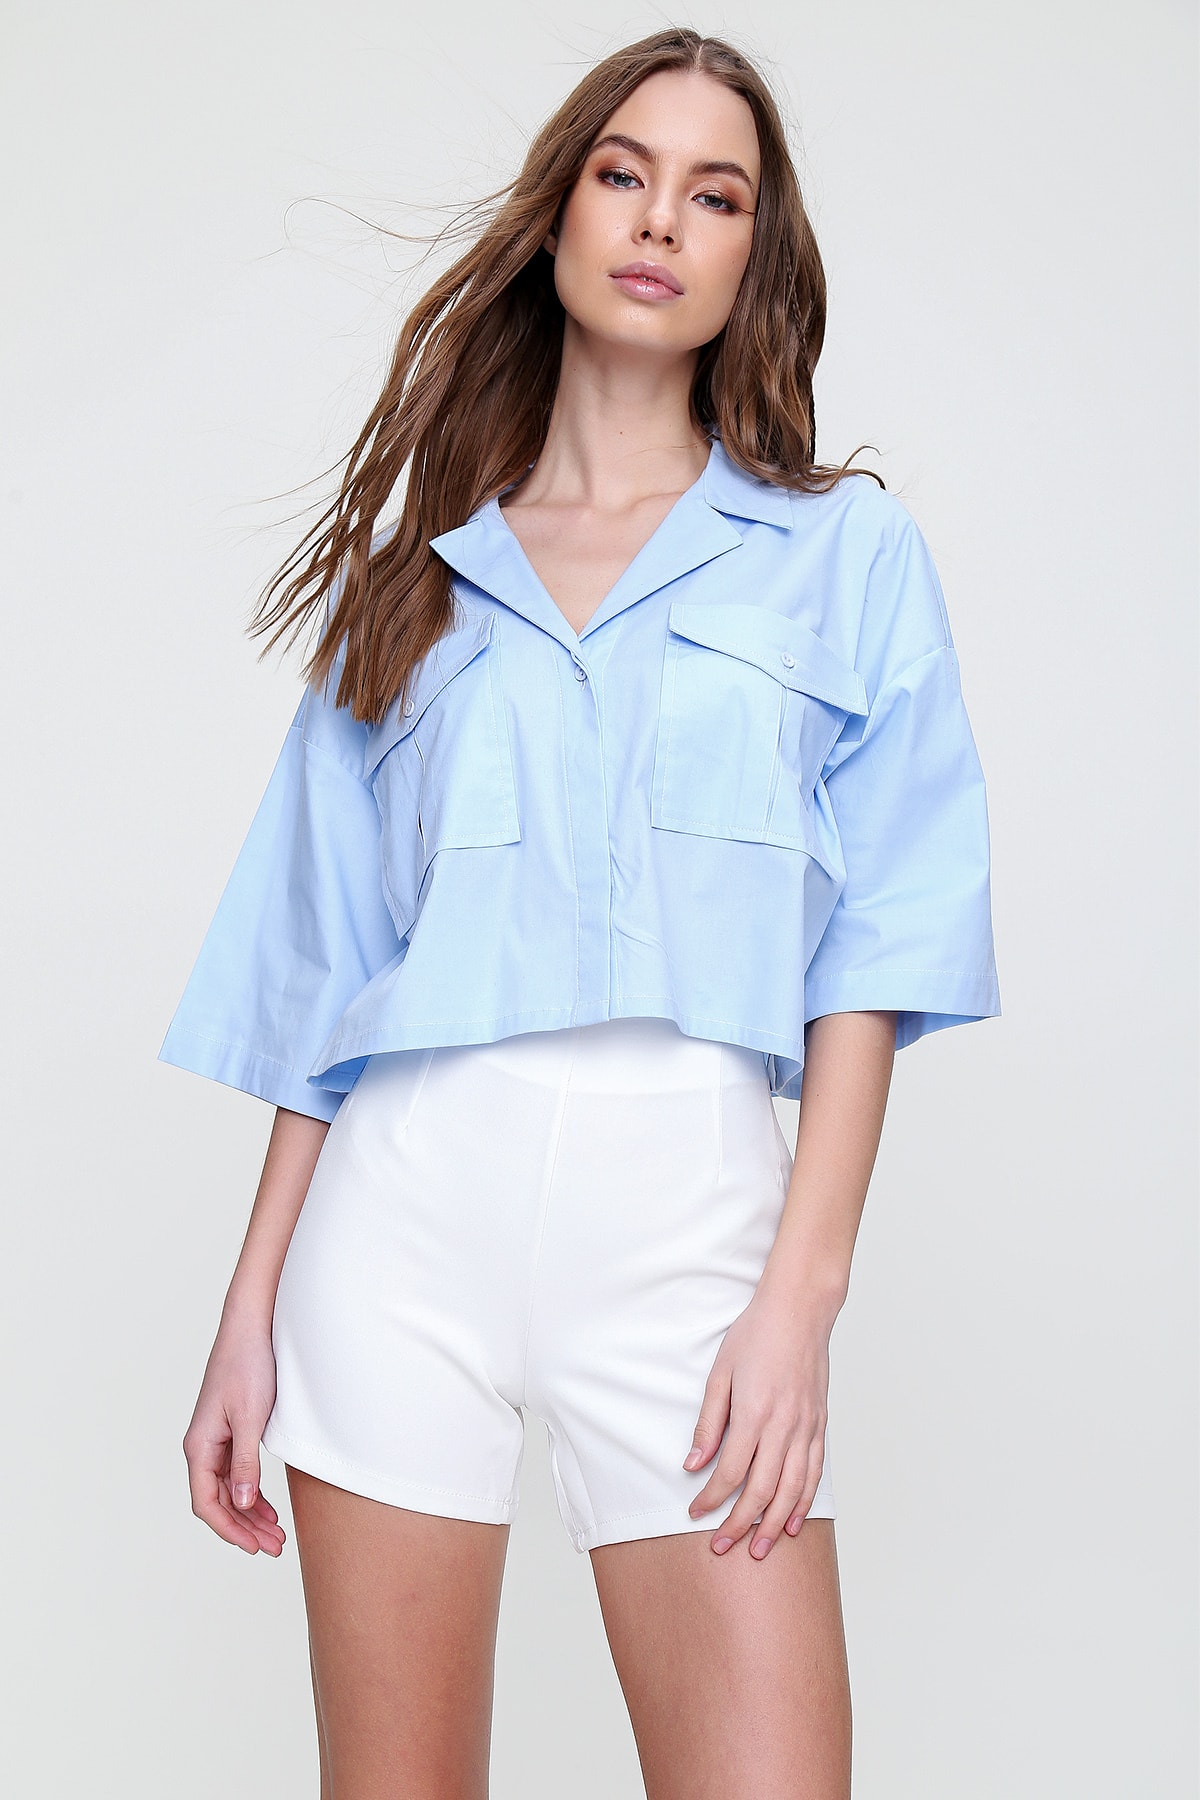 Рубашка – синяя – стандартного кроя Trend Alaçatı Stili, синий